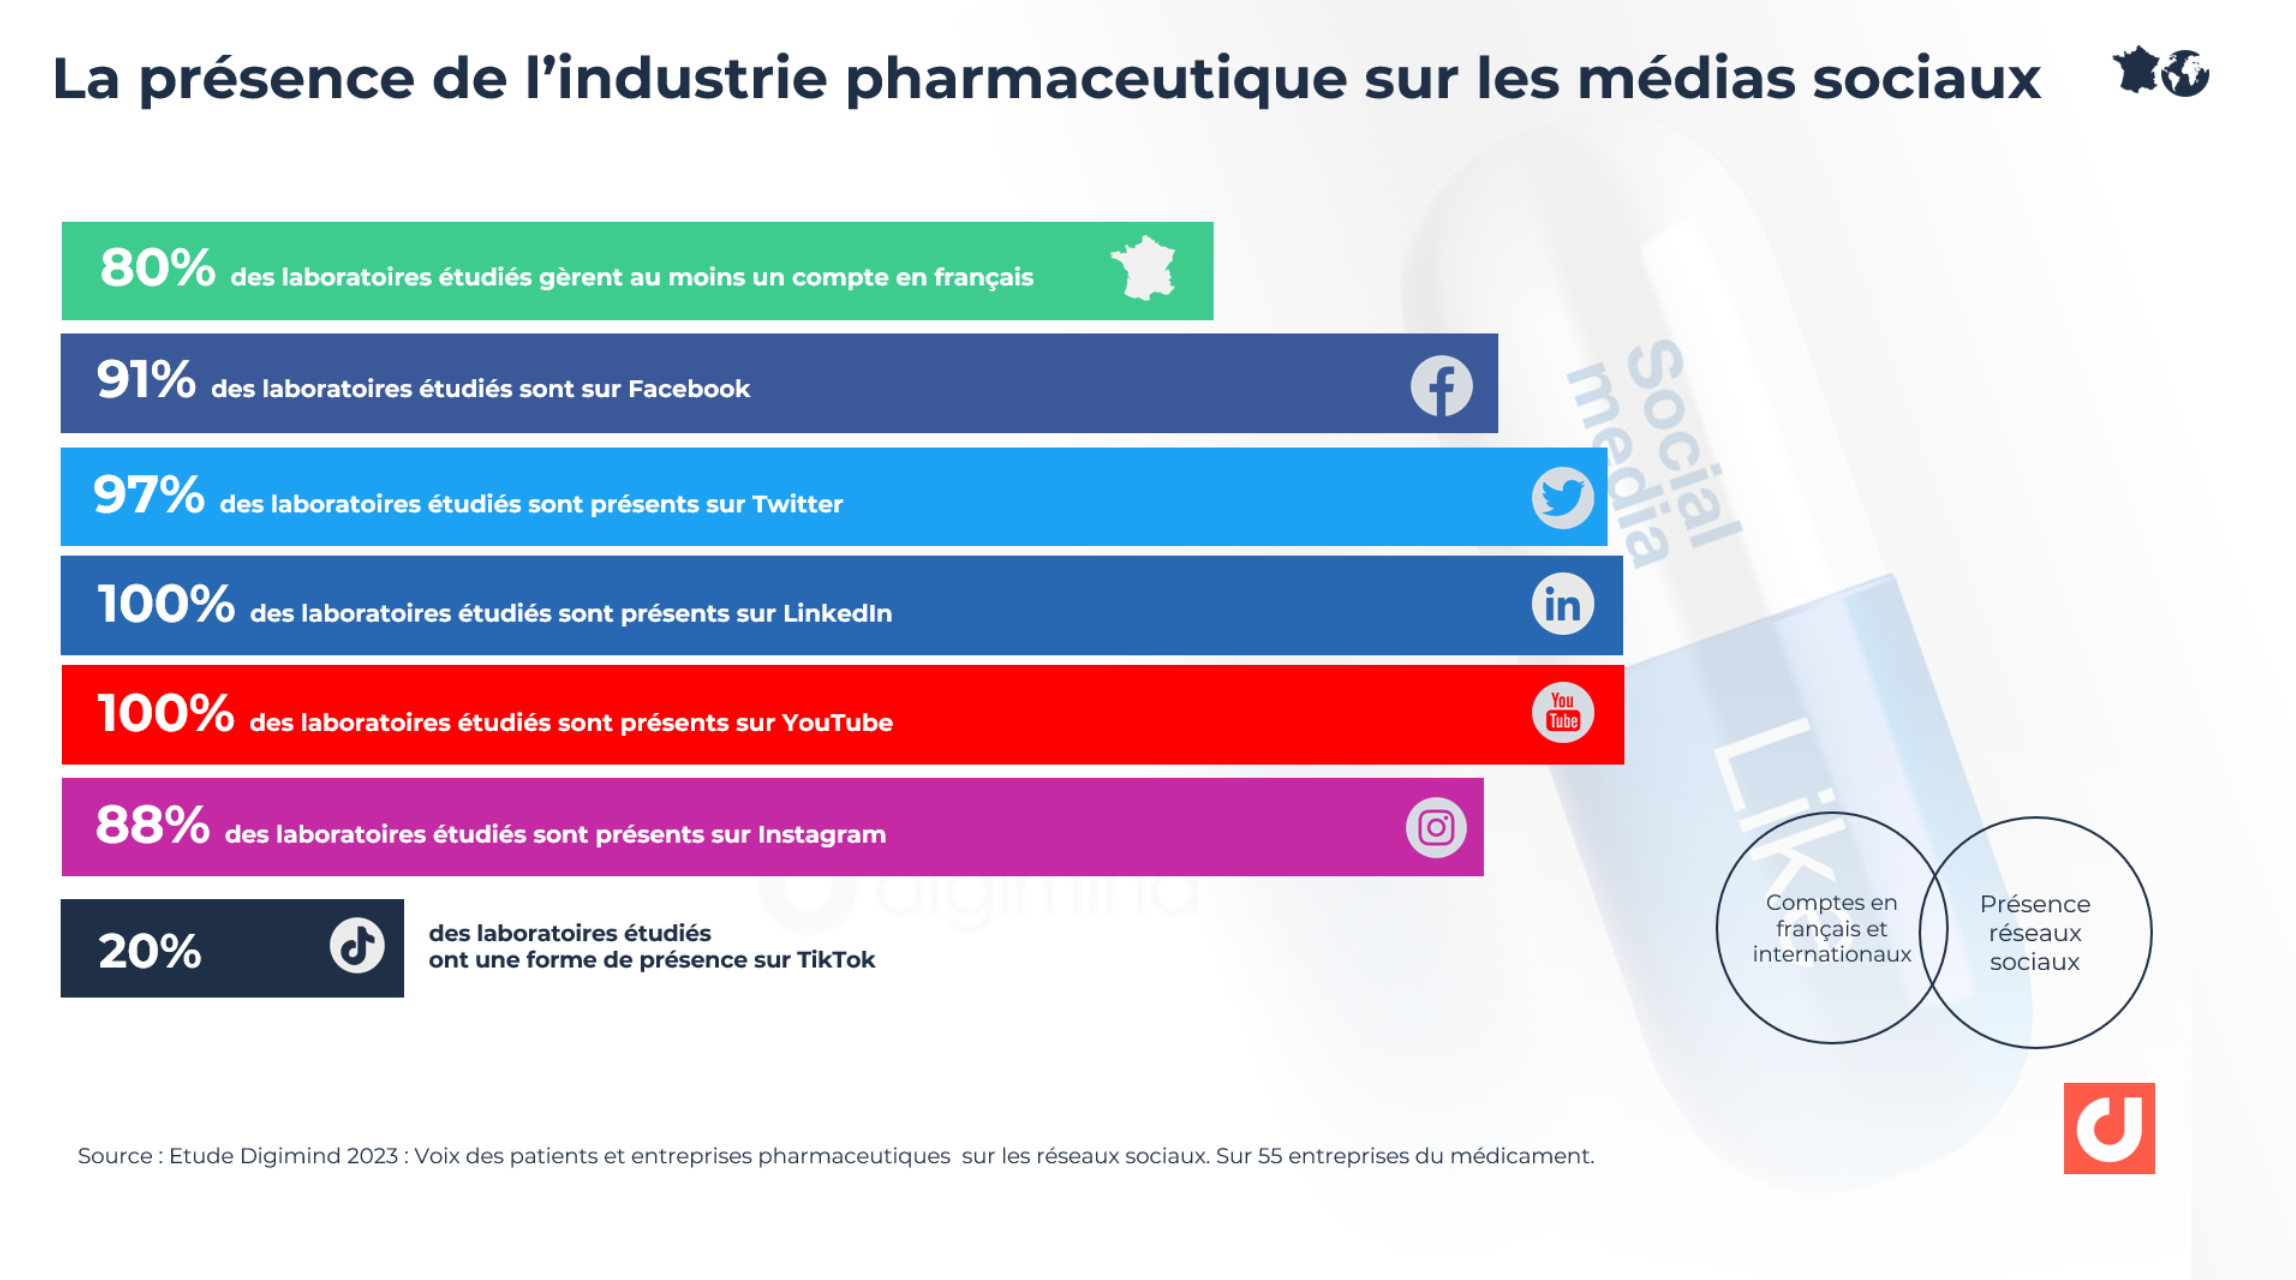 La présence de l’industrie pharmaceutique sur les médias sociaux. Source : Etude Digimind 2023 : Voix des patients et entreprises pharmaceutiques  sur les réseaux sociaux. Sur 55 entreprises du médicament.